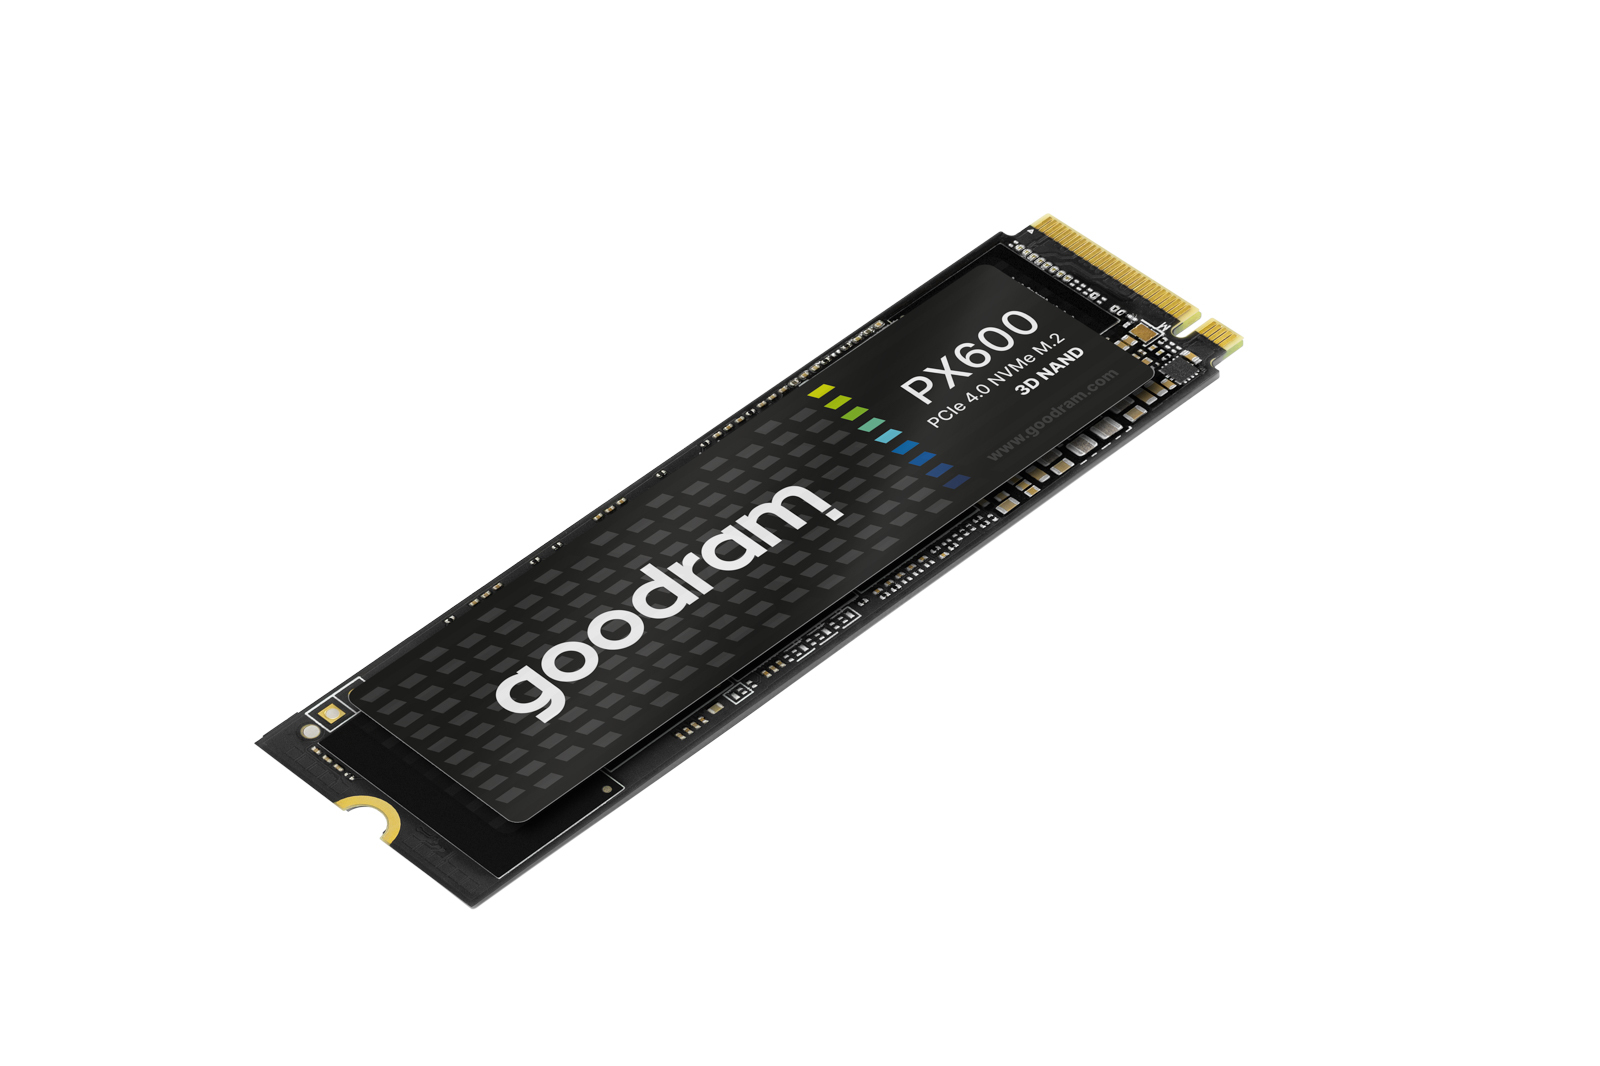 Goodram PX600 SSD, PCIe 4x4, 2 TB, M.2 2280, NVMe, RETAIL